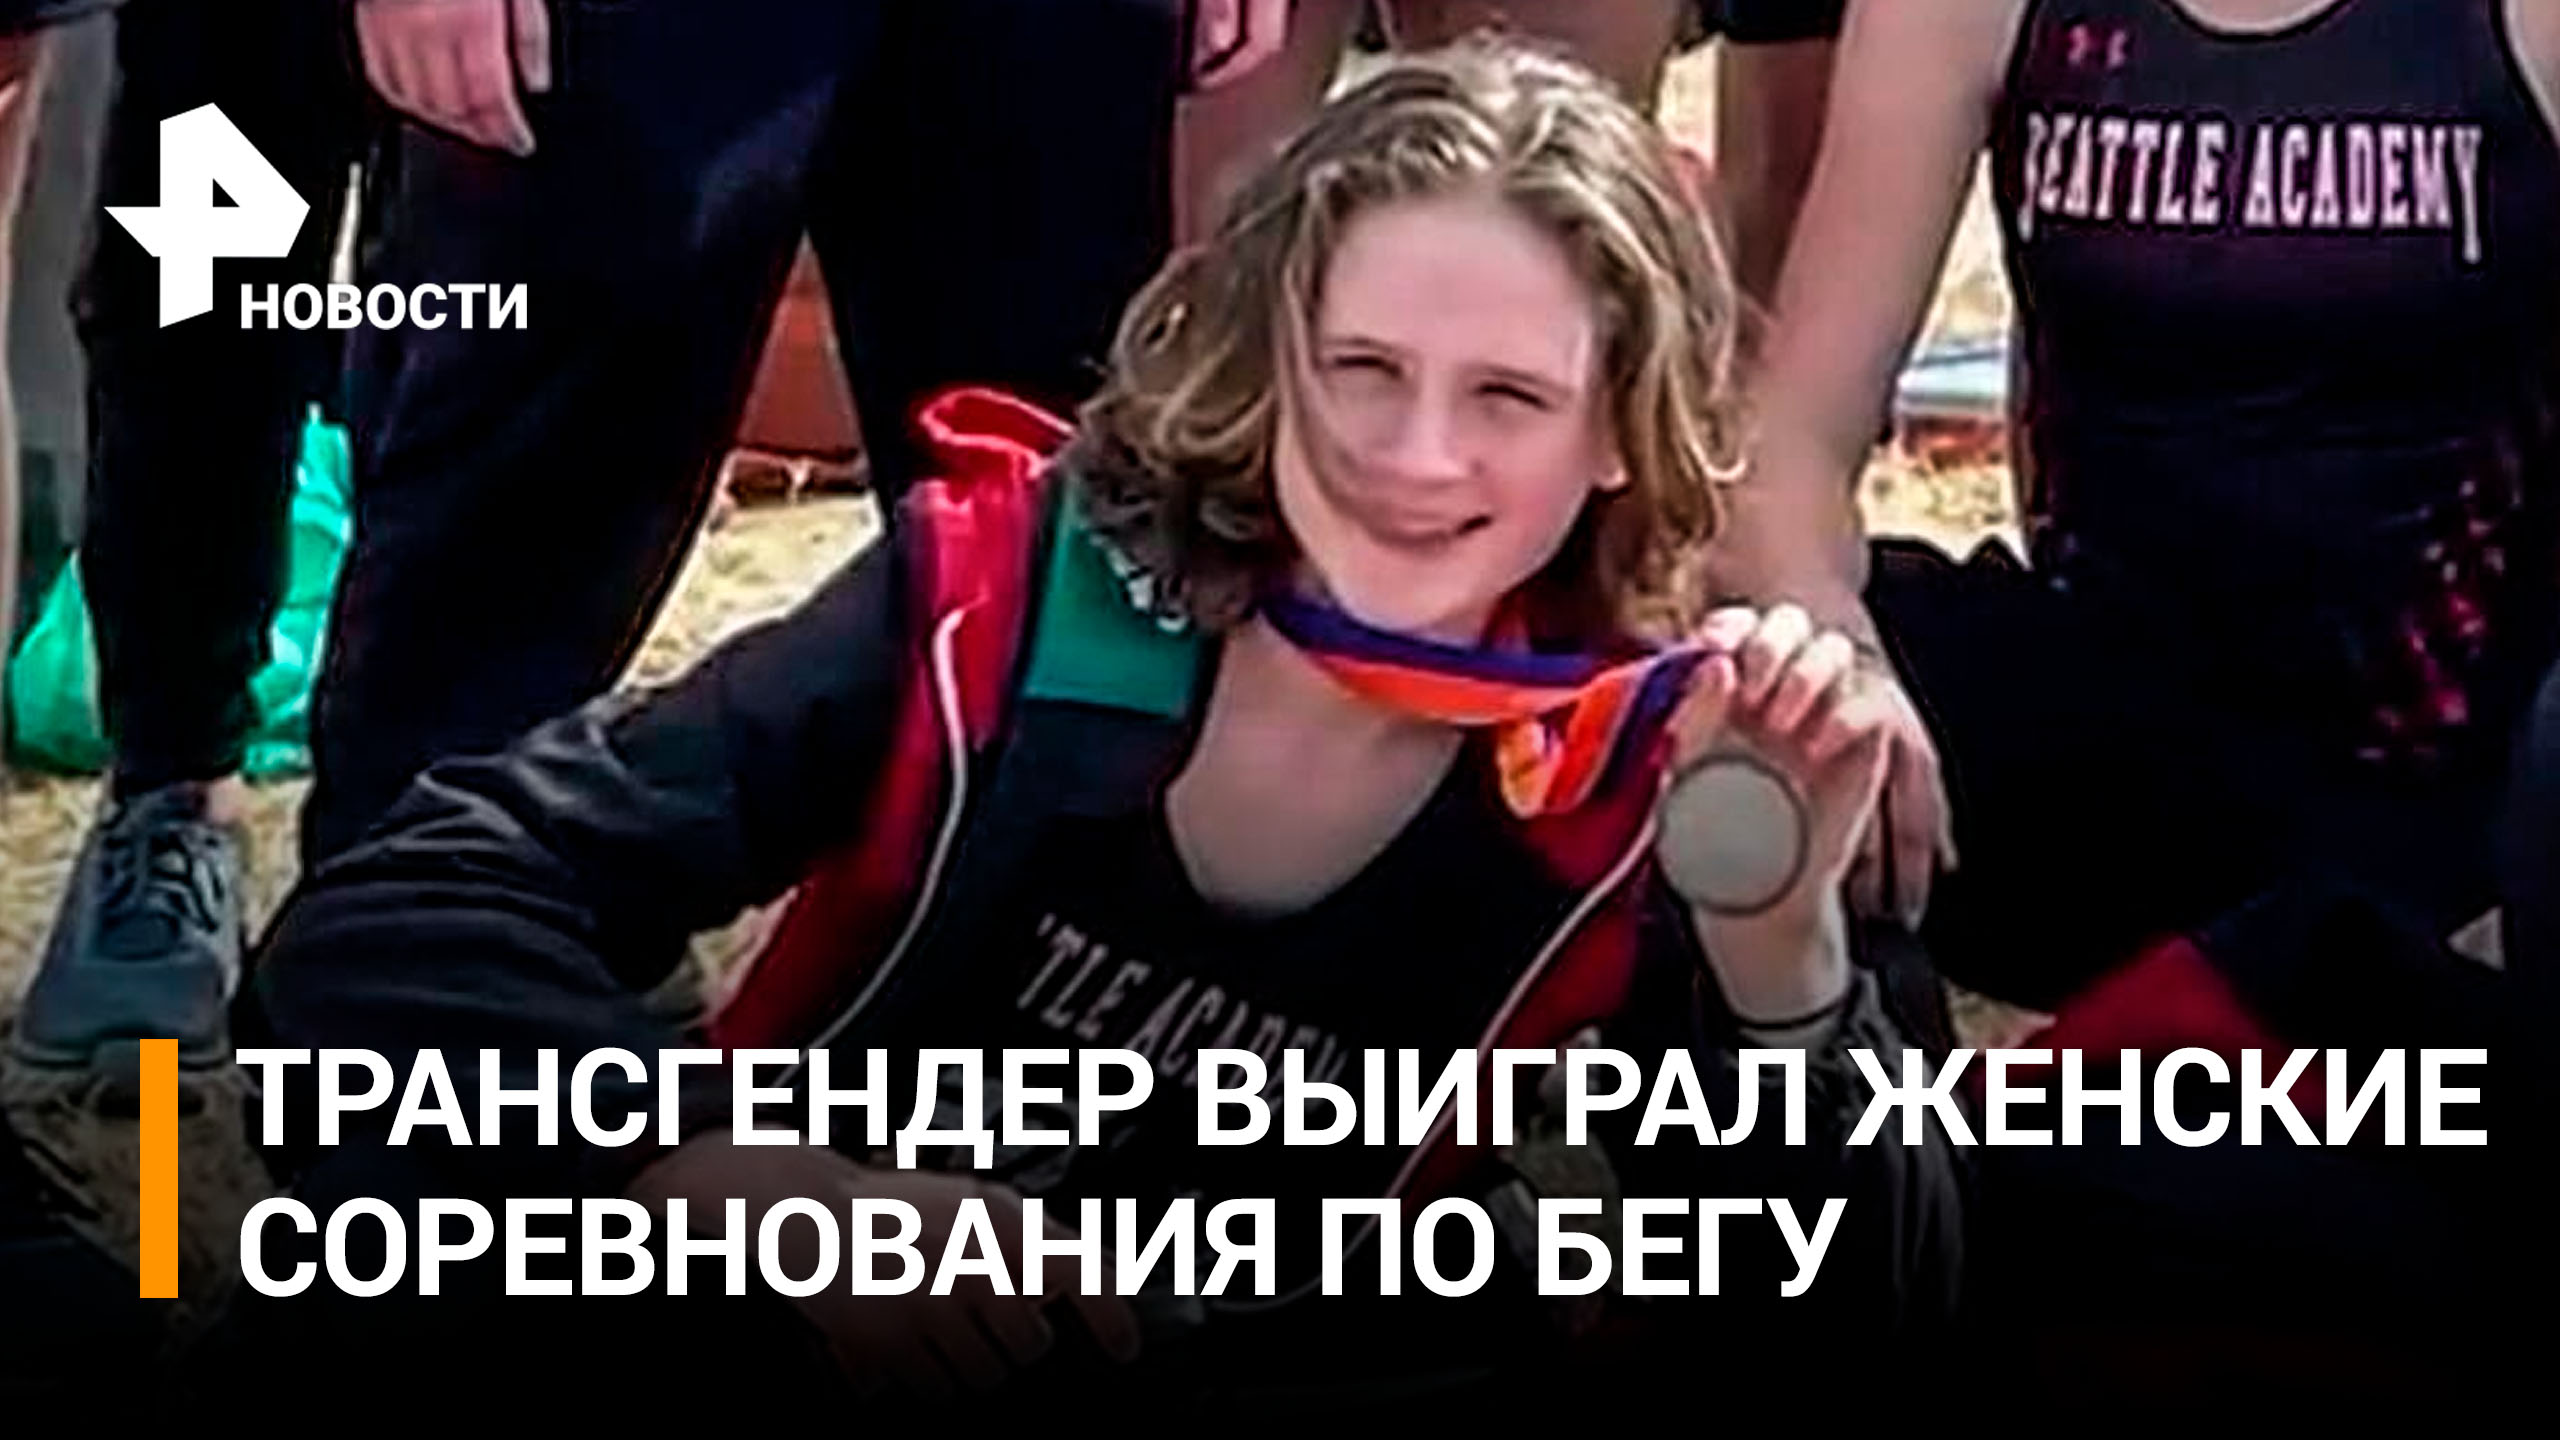 Трансгендер выиграл женские соревнования по бегу в США / РЕН Новости